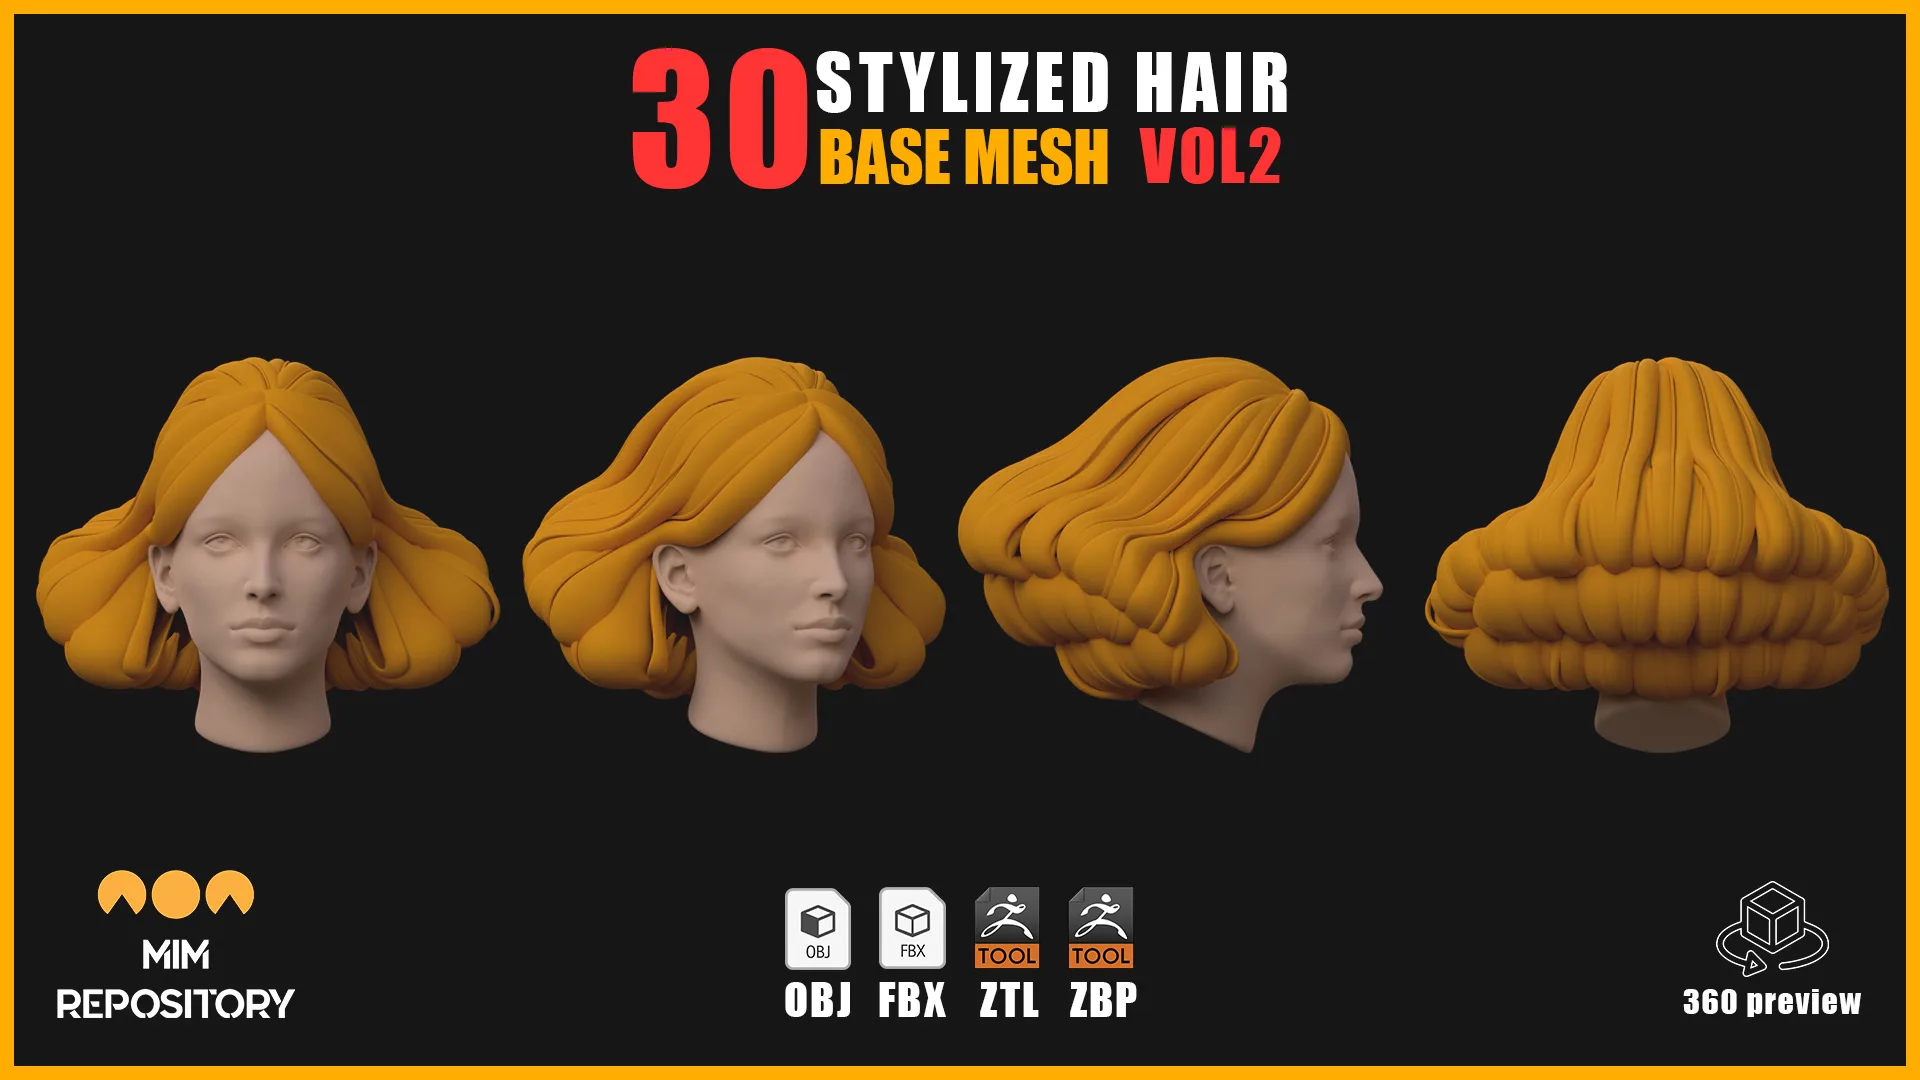 30 Stylized Hair Base Mesh - VOL 02